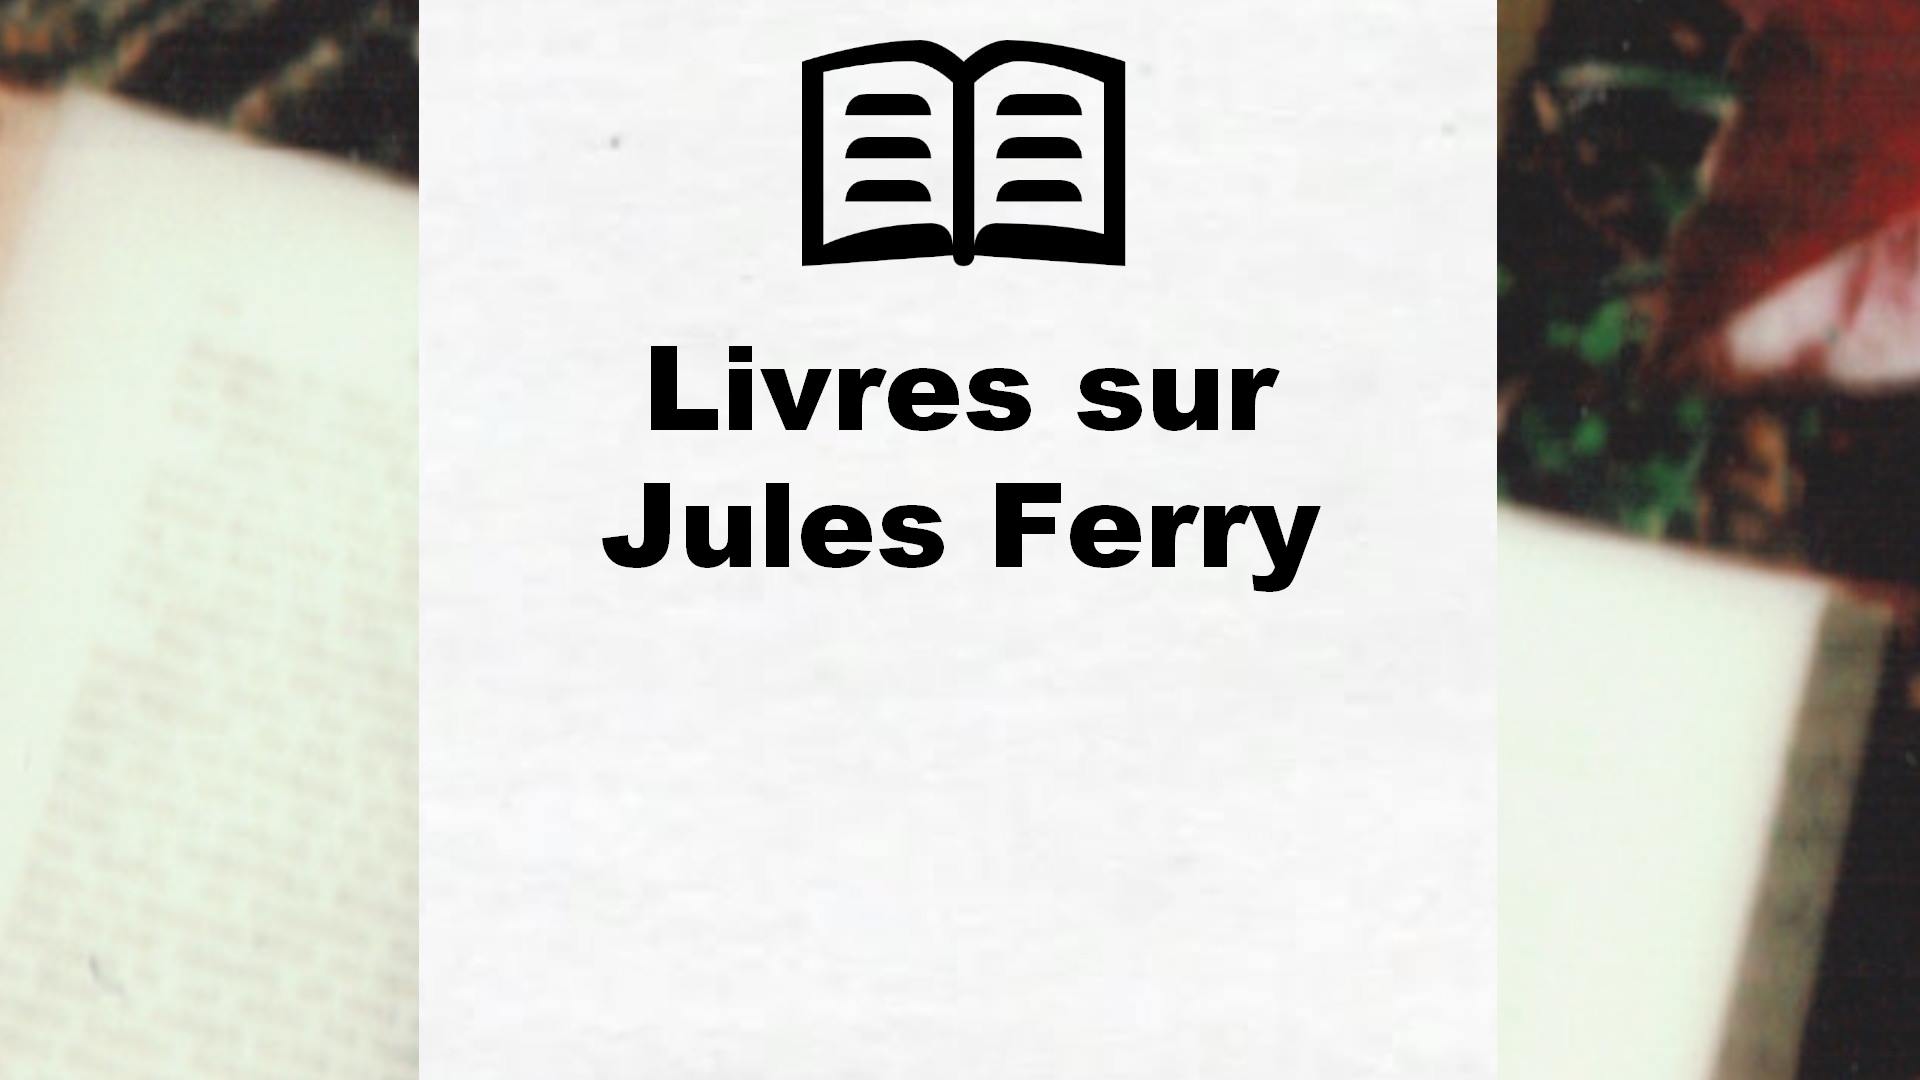 Livres sur Jules Ferry